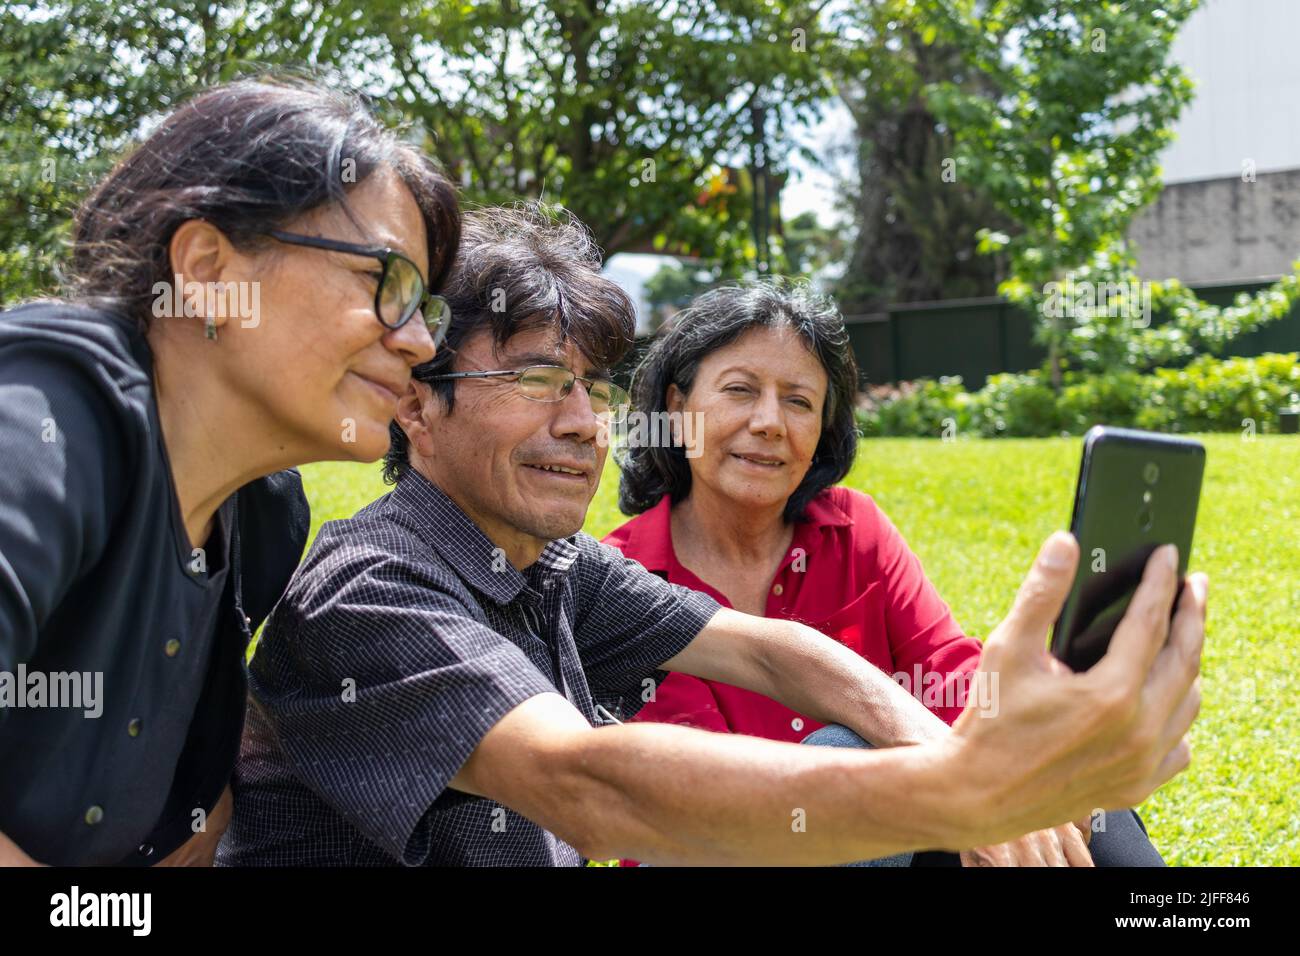 Grupo de amigos latinos de mediana edad tomando un selfie y divirtiéndose en un parque Foto de stock